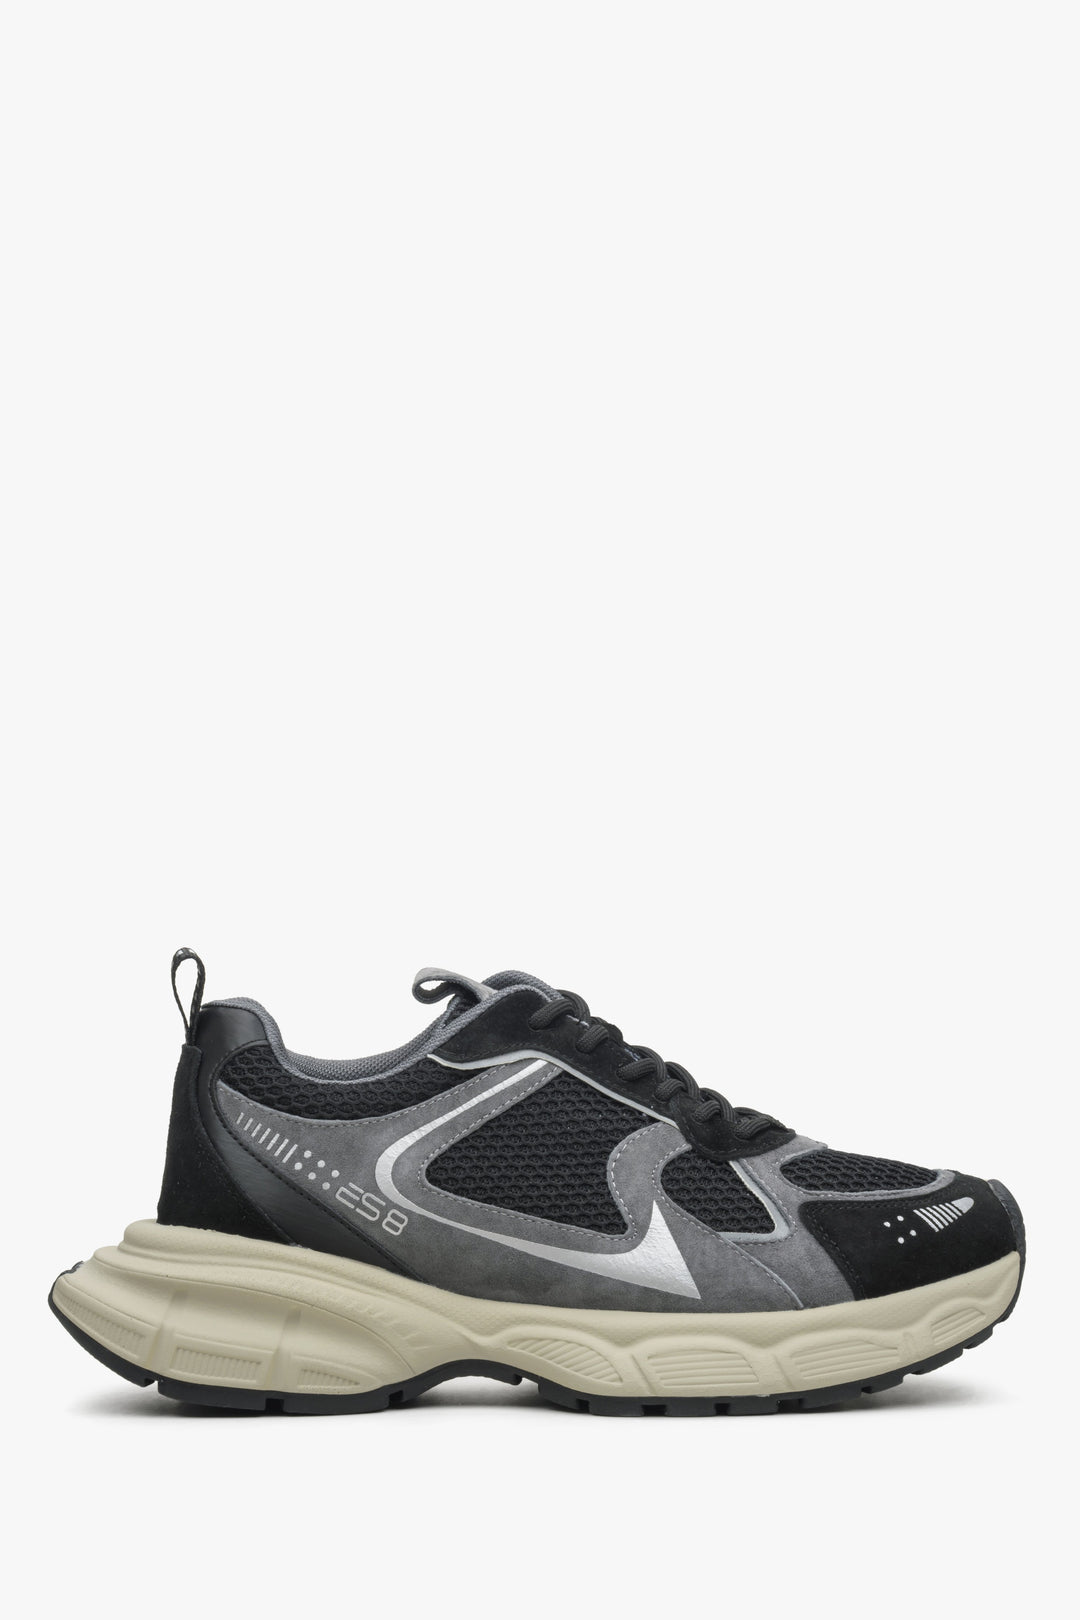 Czarno-szare sneakersy damskie na elastycznej podeszwie ES 8 ER00114599